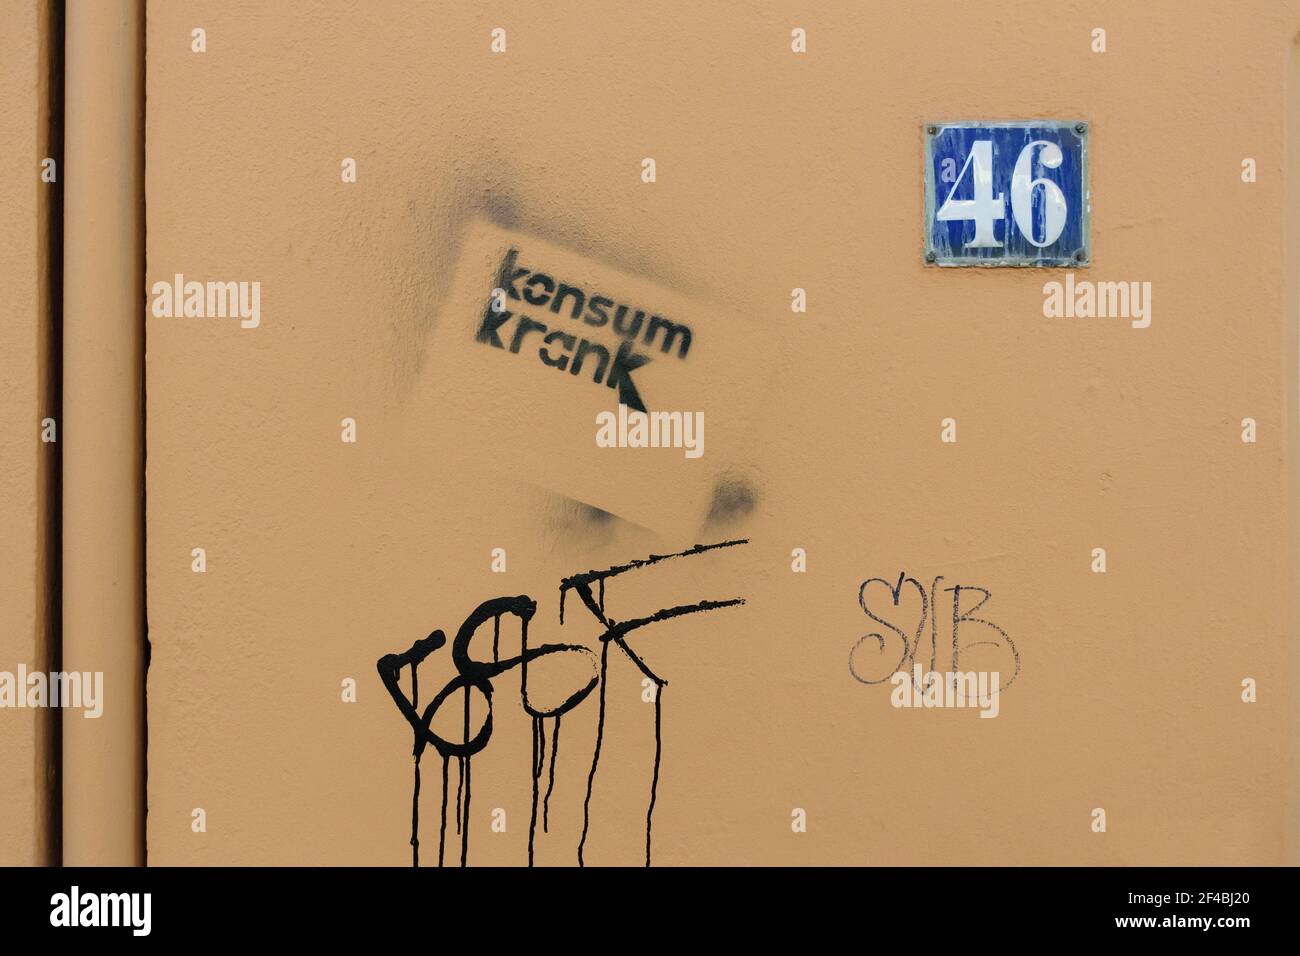 Schablonengraffiti - Konsum krank (konsum krank) - auf einer beige gemalten Hauswand mit der Hausnummer 46, Hamburg, Deutschland. Stockfoto